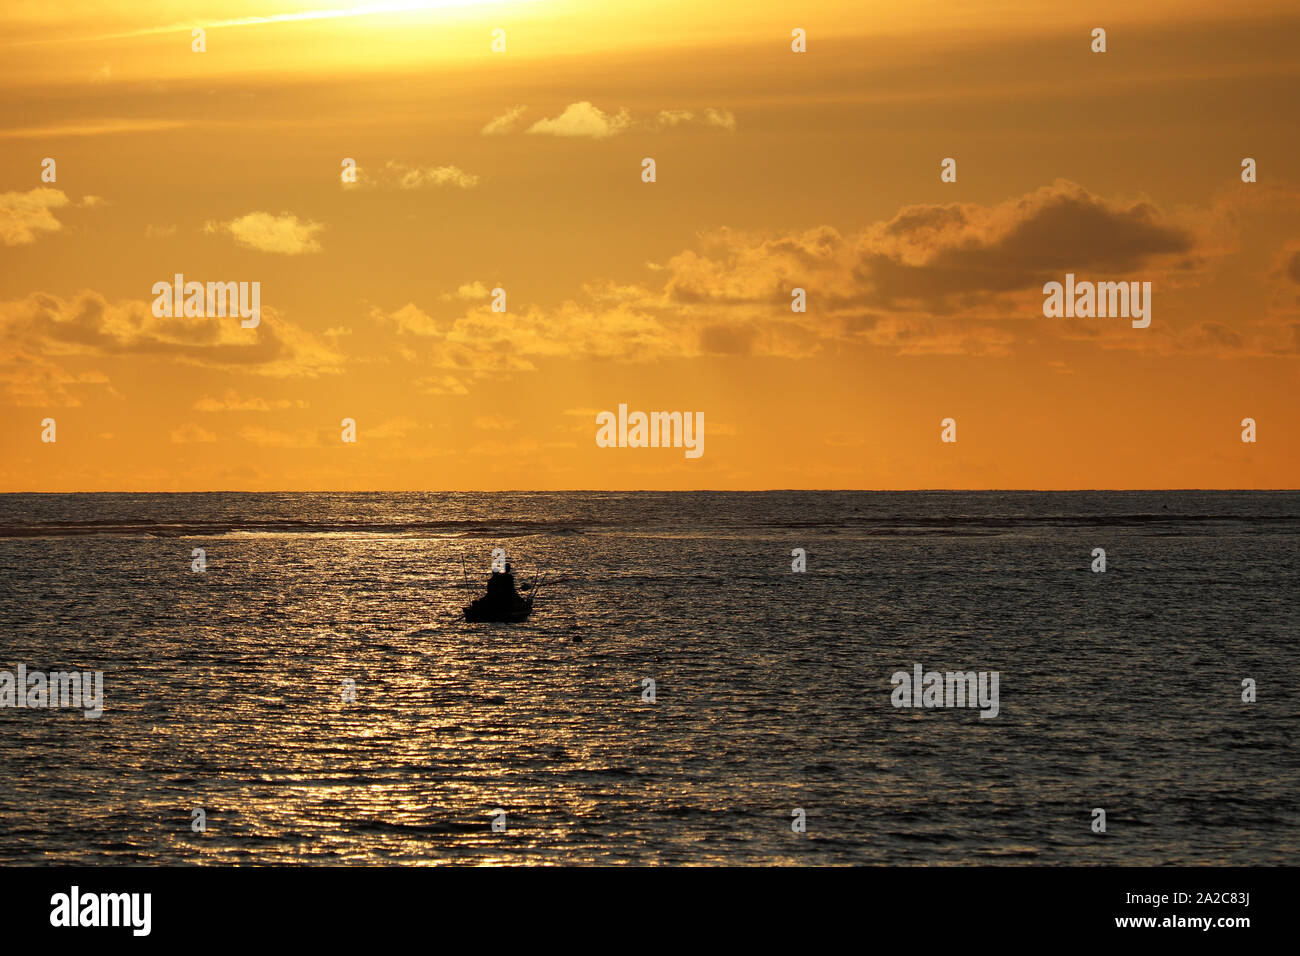 Tramonto sul mare, nero silhouette di una barca con persone sull'orizzonte. Drammatica orange sky con le nuvole, concetto di nave in difficoltà, perso in mare Foto Stock